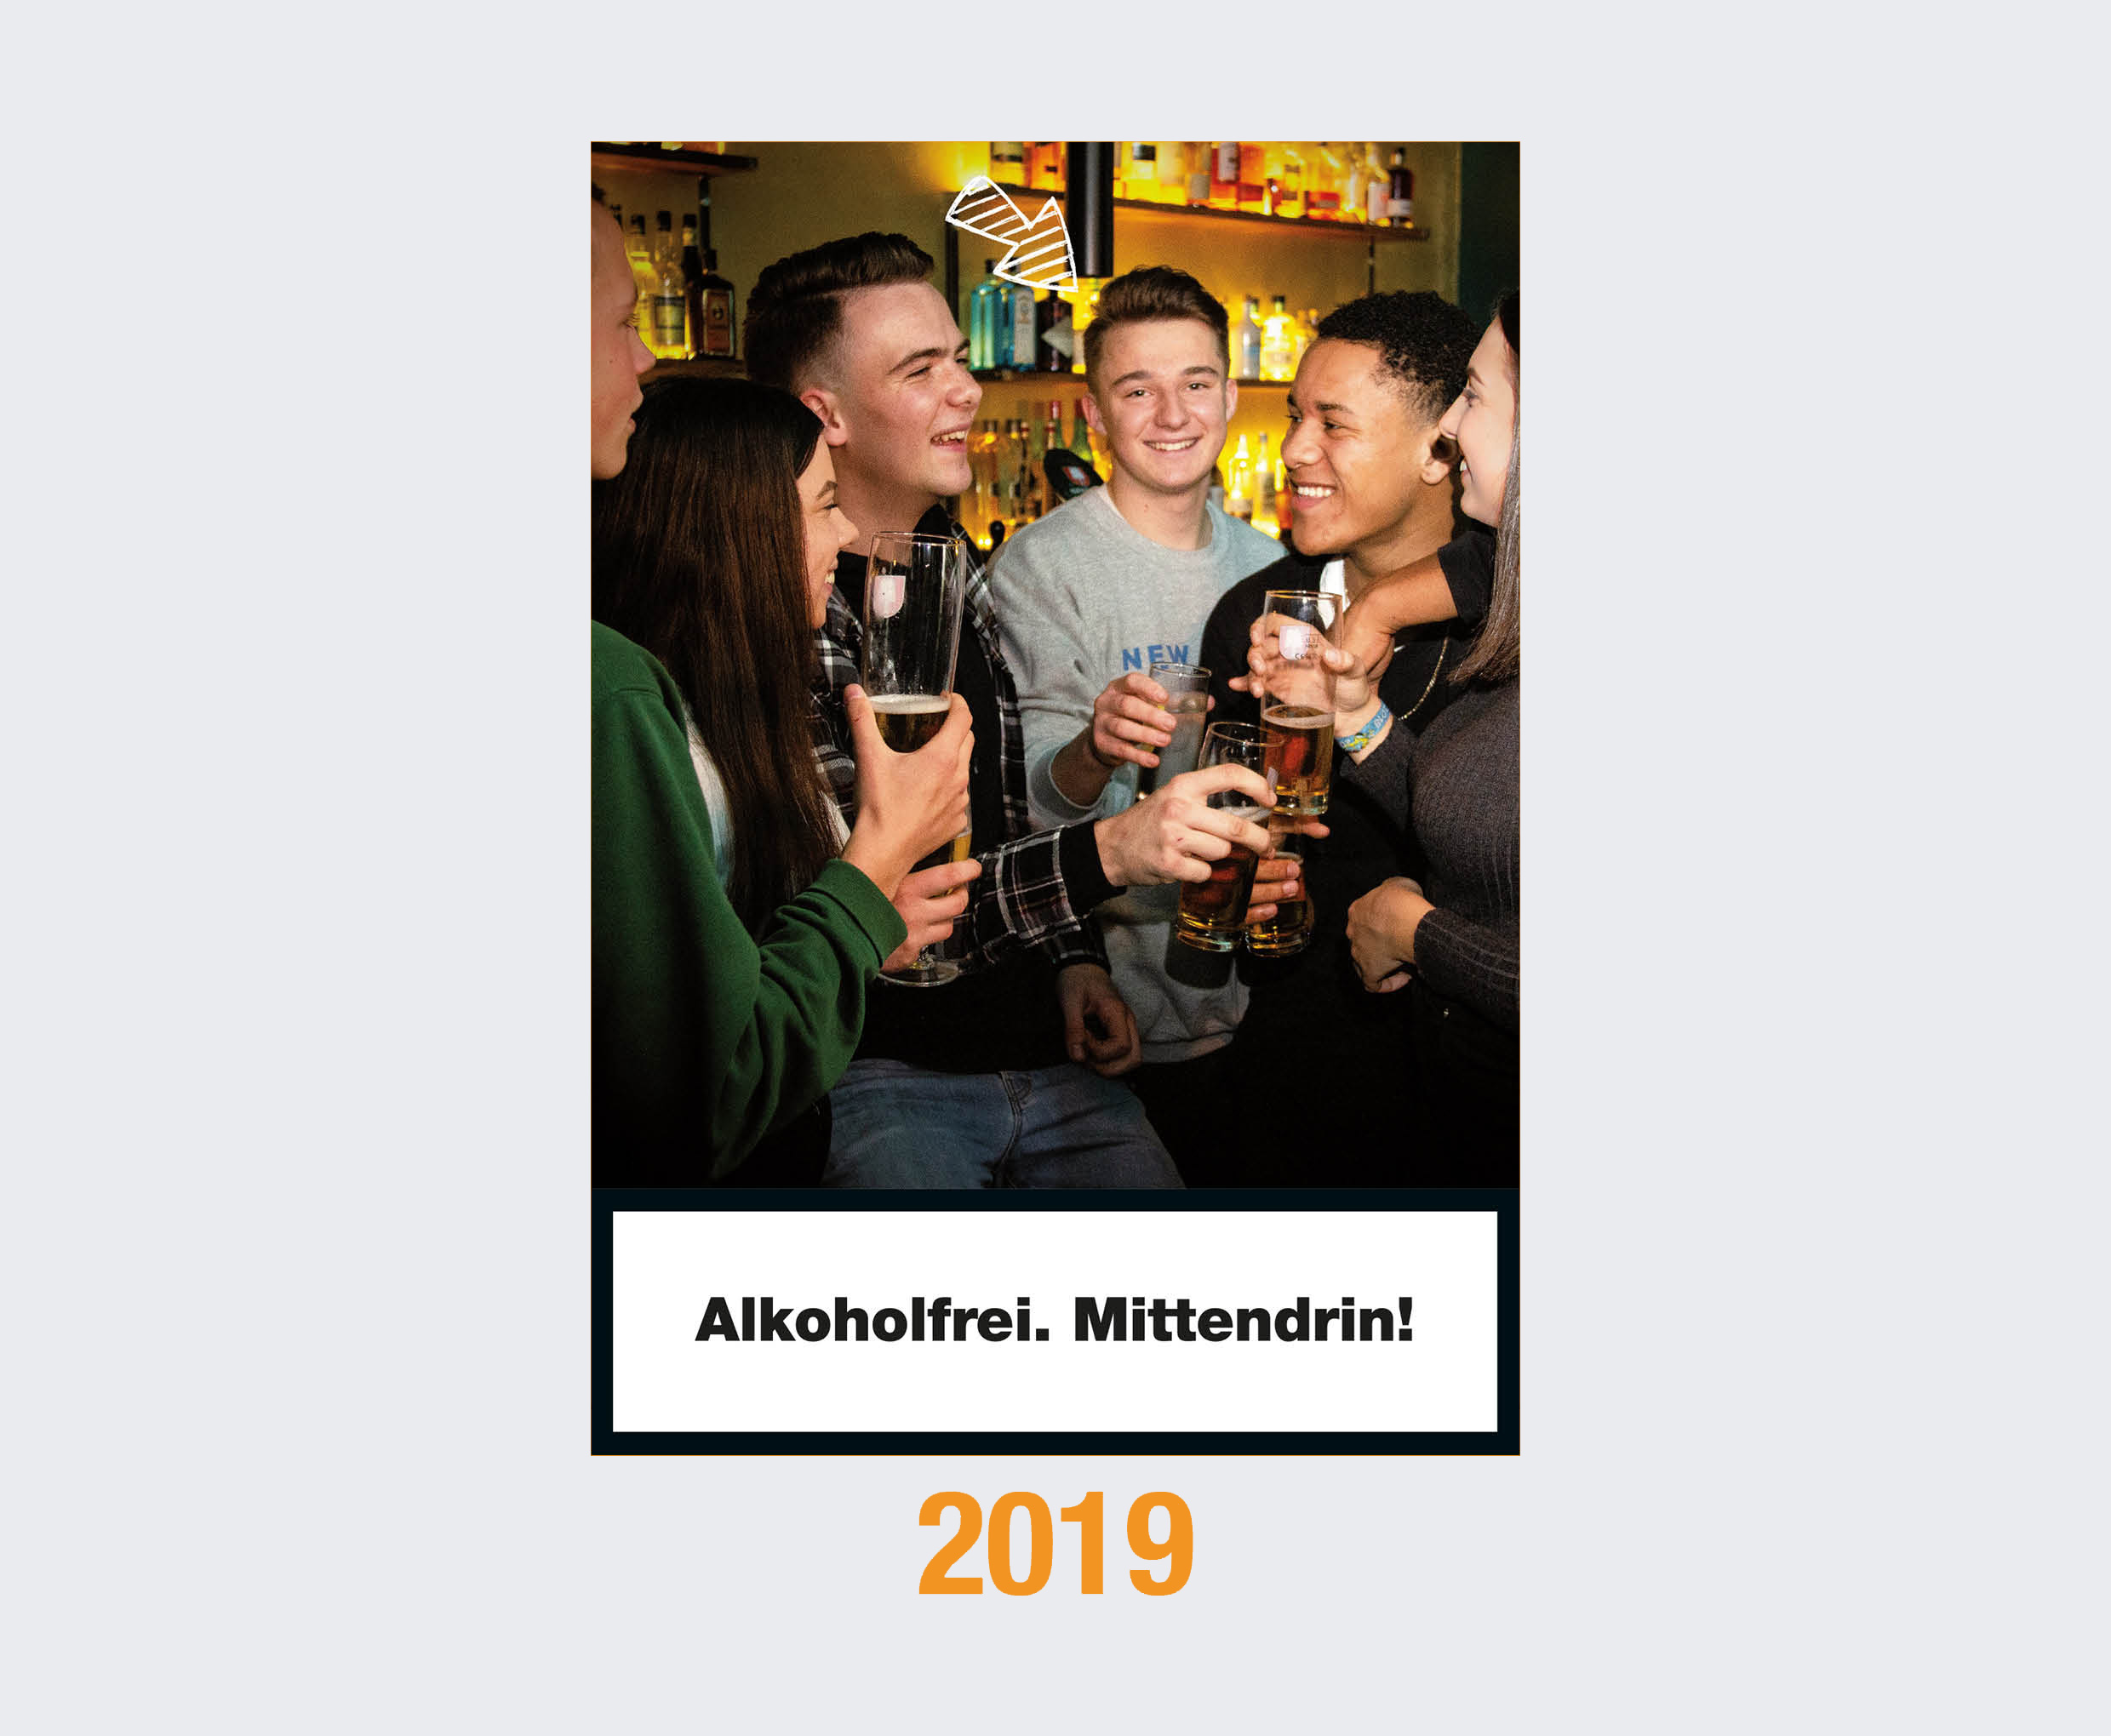 2019: Alkoholfrei. Mittendrin! 